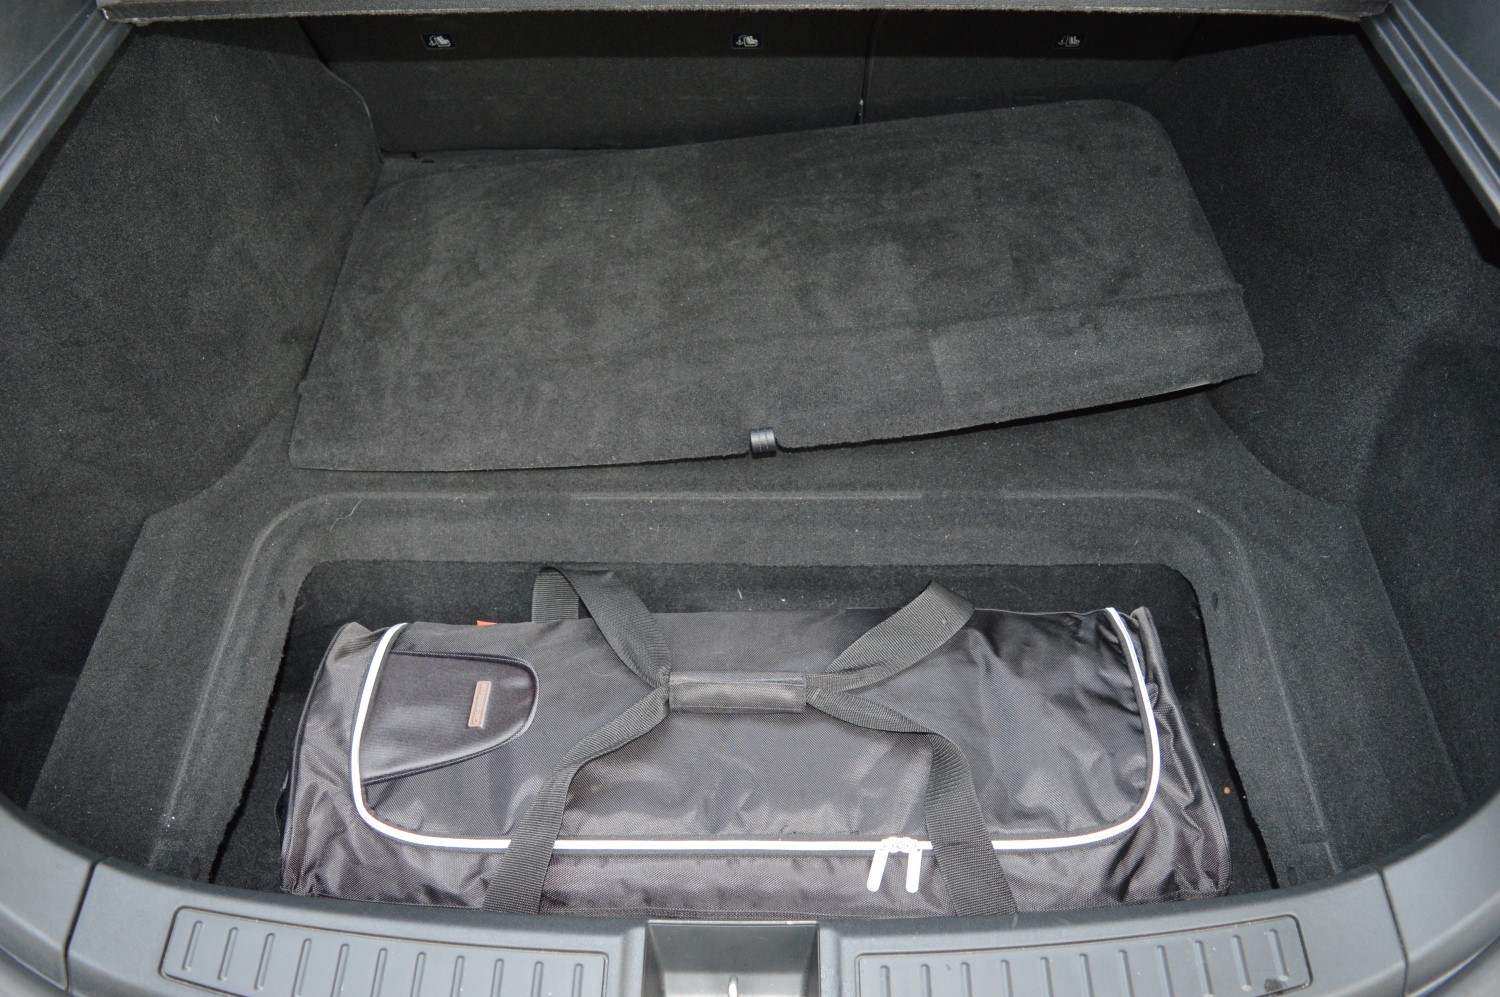 Sac / bagage de voyage pour frunk coffre avant pour Tesla Model 3 et  Tesla Model Y